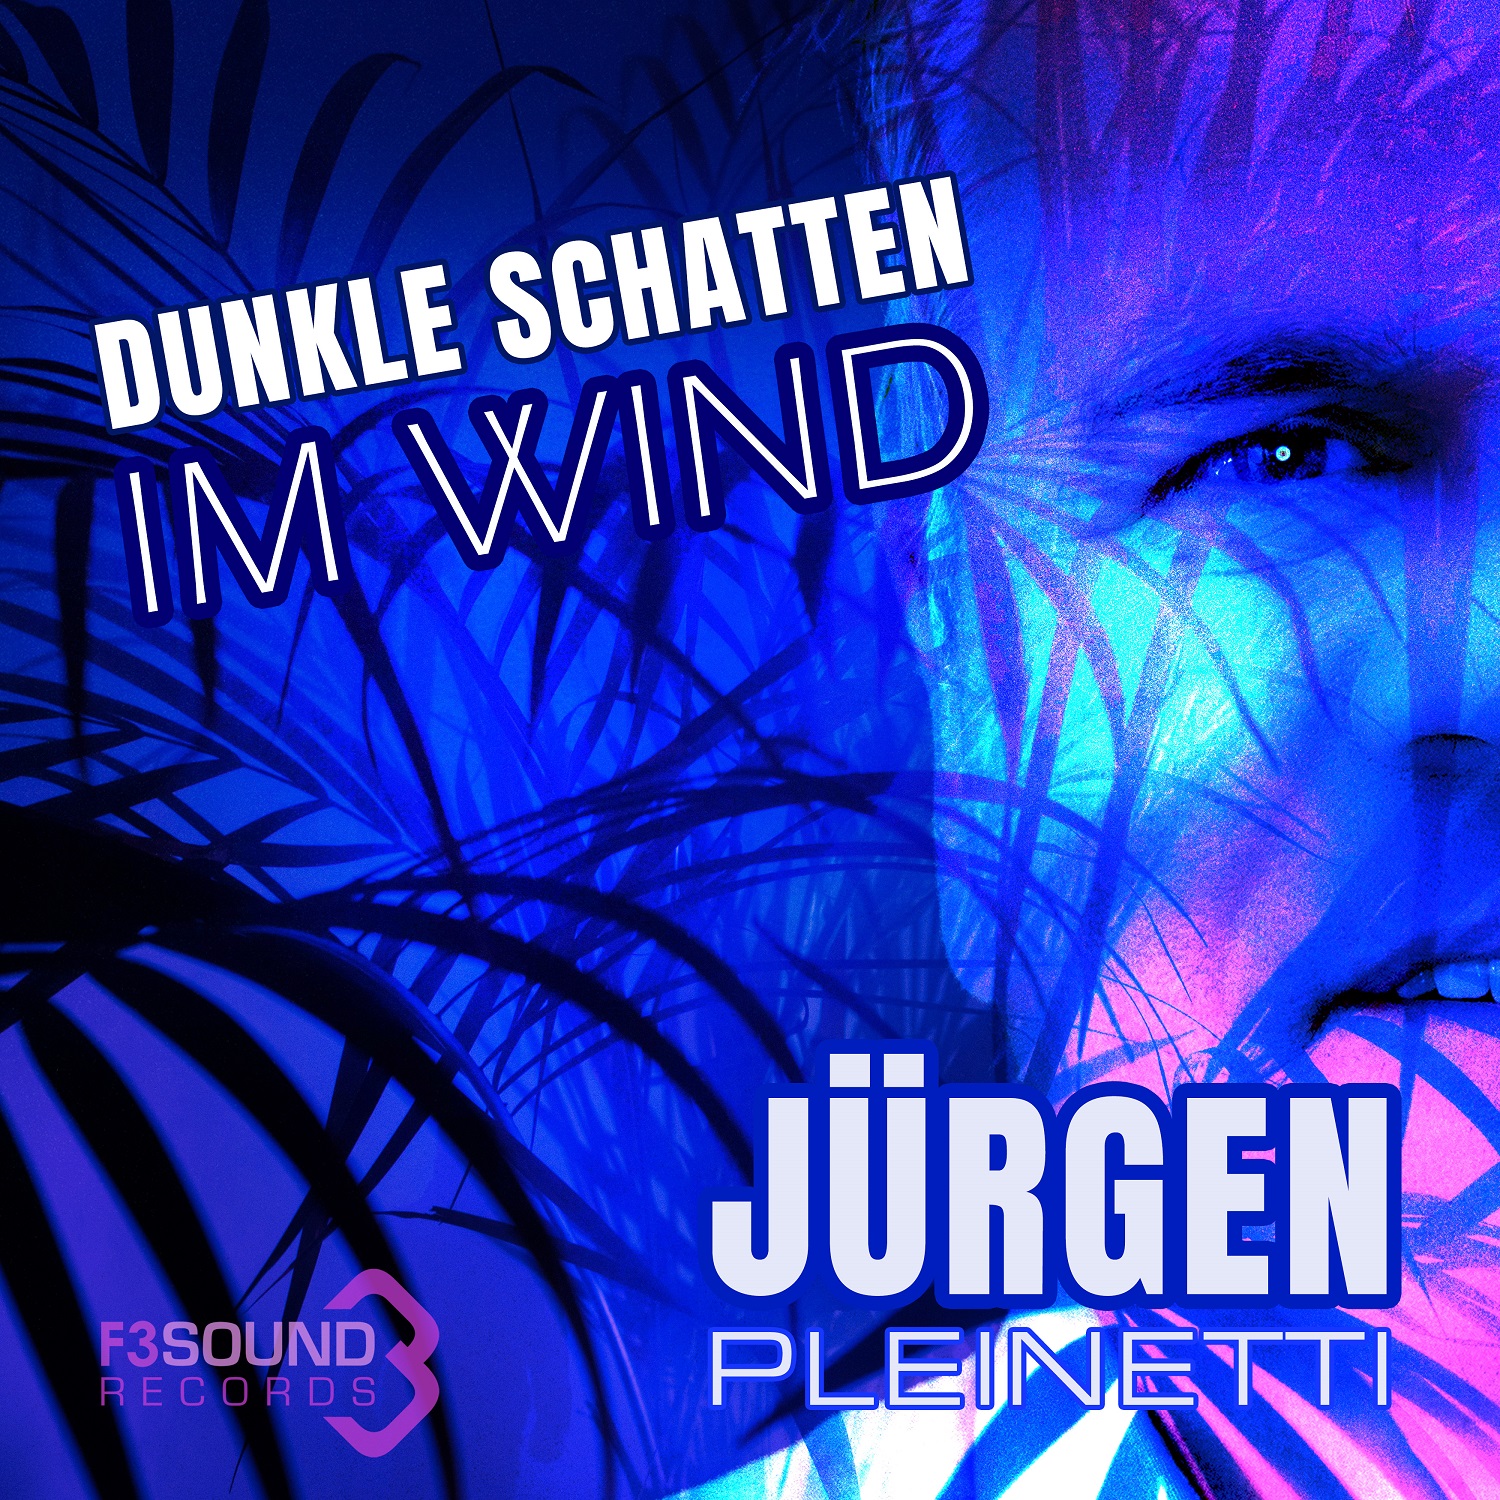 Jrgen Pleinetti - Dunkle Schatten im Wind - cover 3000pxl.jpg